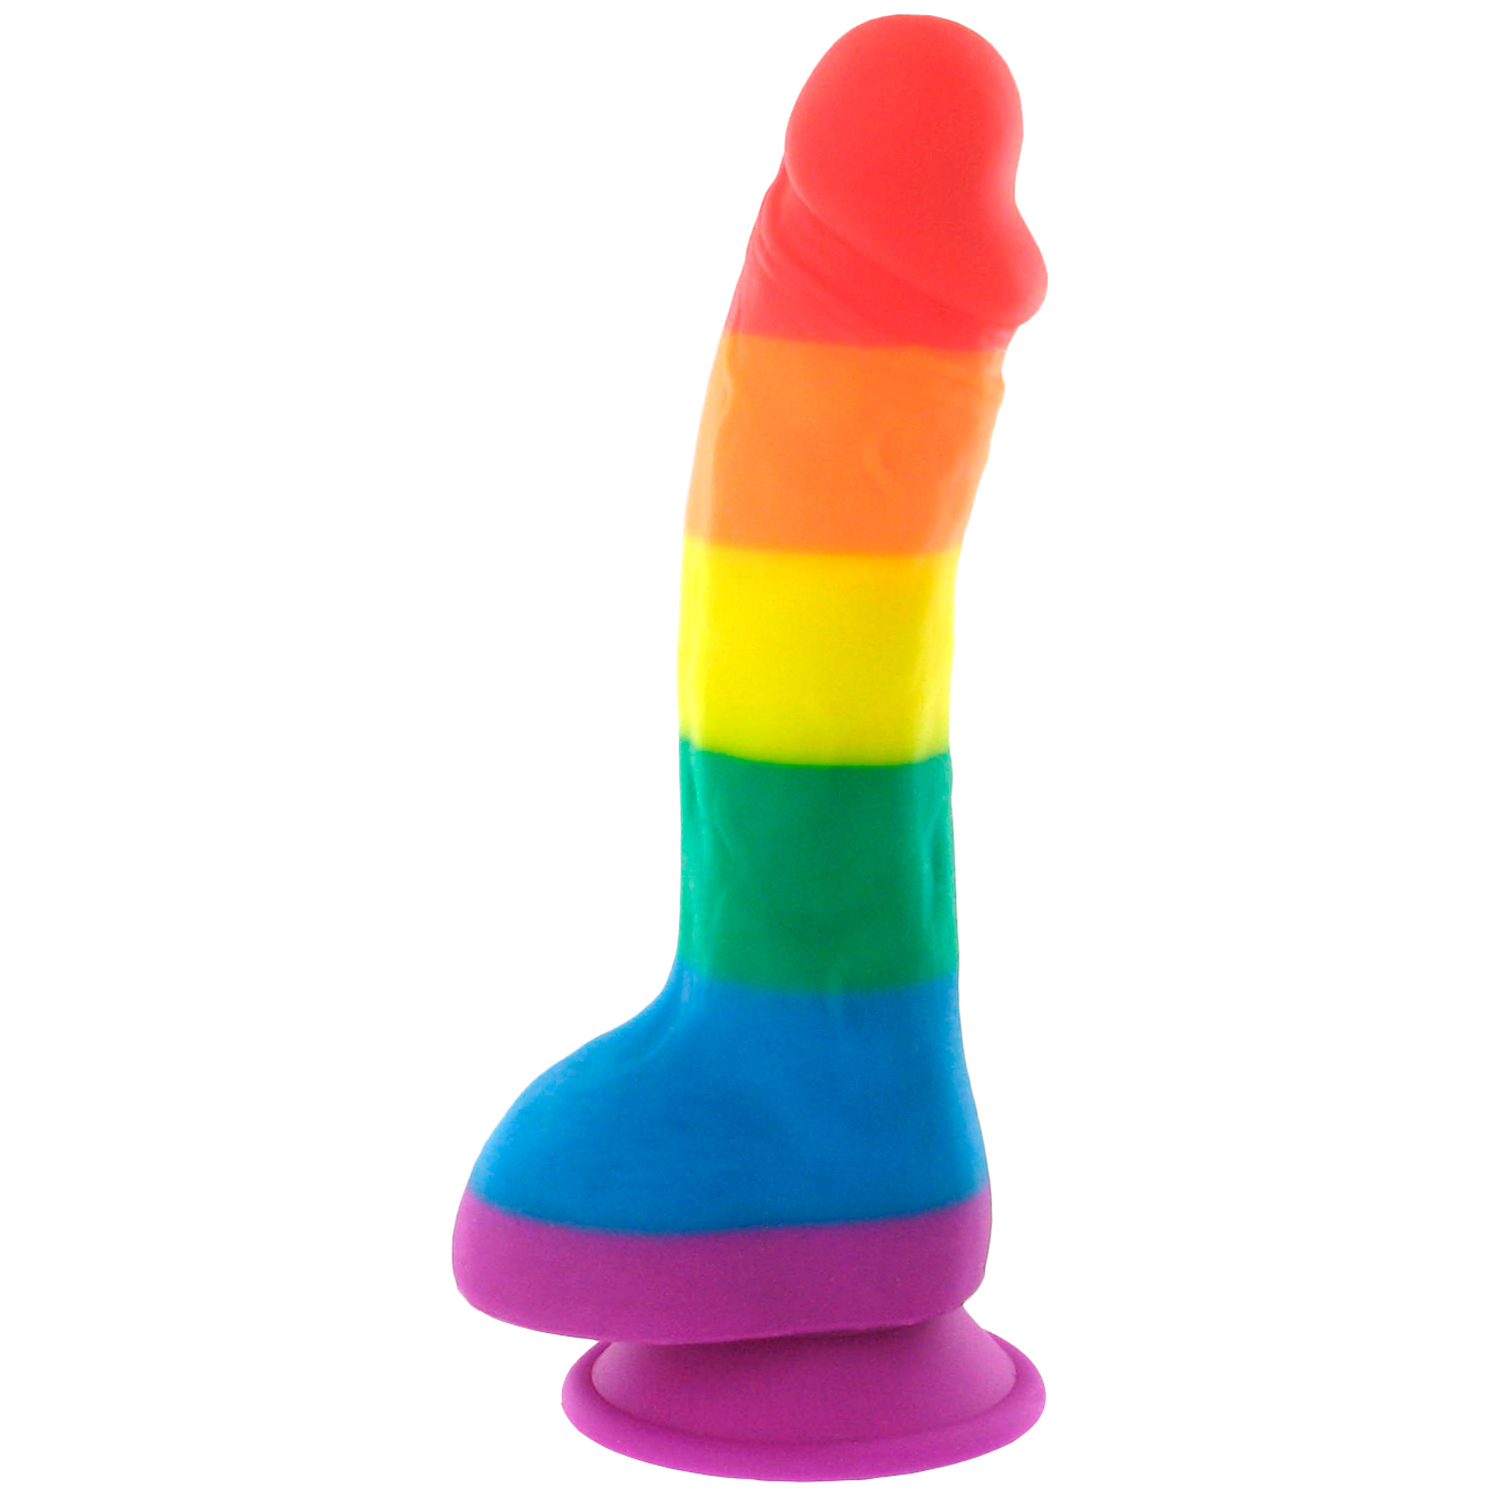 Autoblow Pride Dildo Original Rainbow Gode en Silicone avec Testicules - Couleurs mélangées